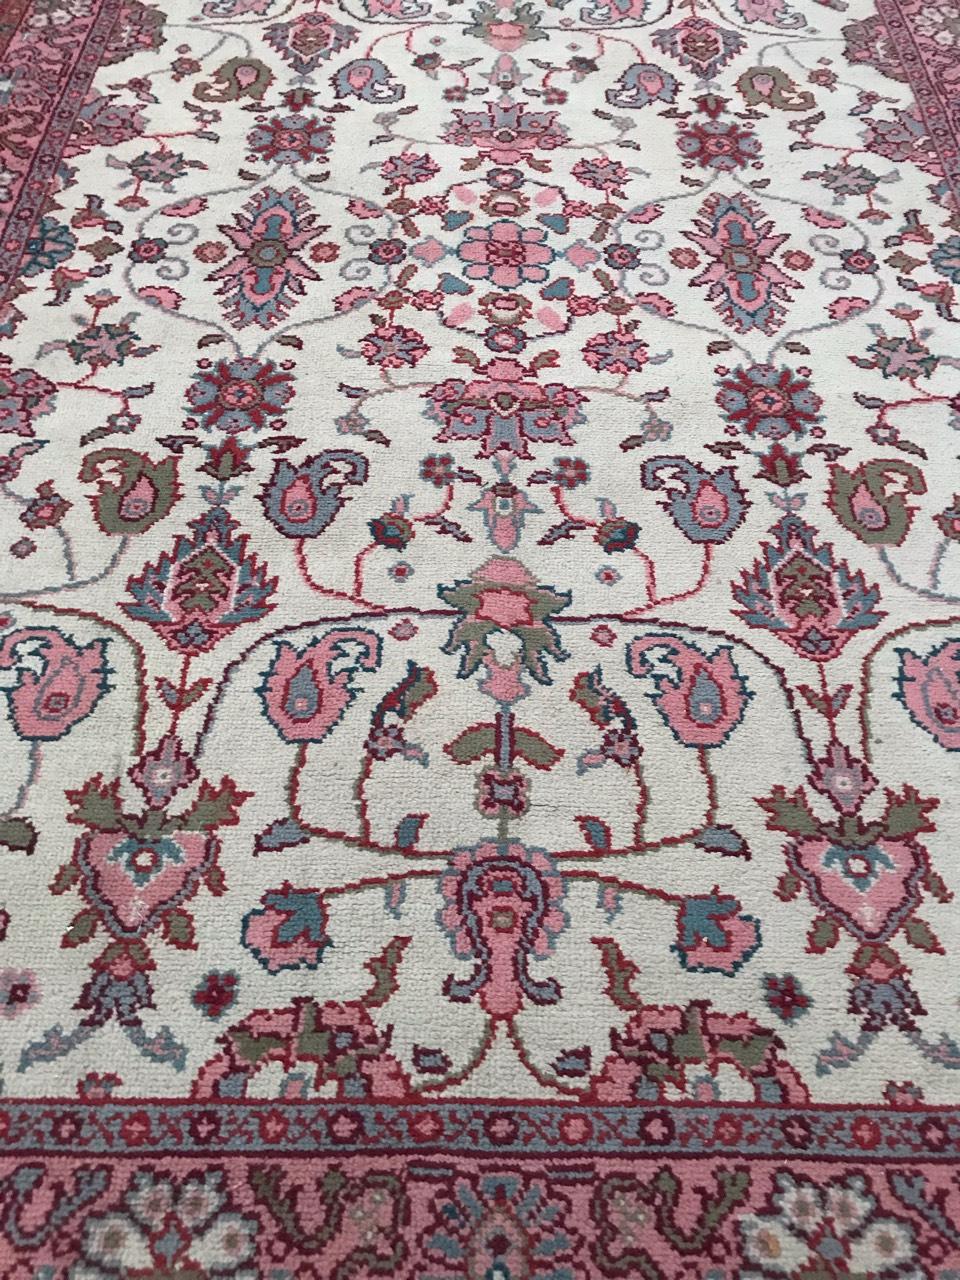 Großer spanischer Teppich mit schönem türkischem Smyrne-Muster, weißes Feld mit rosa, blauen und grünen Farben, komplett handgeknüpft mit Wollsamt auf Baumwoll- und Jutegrund.

✨✨✨
